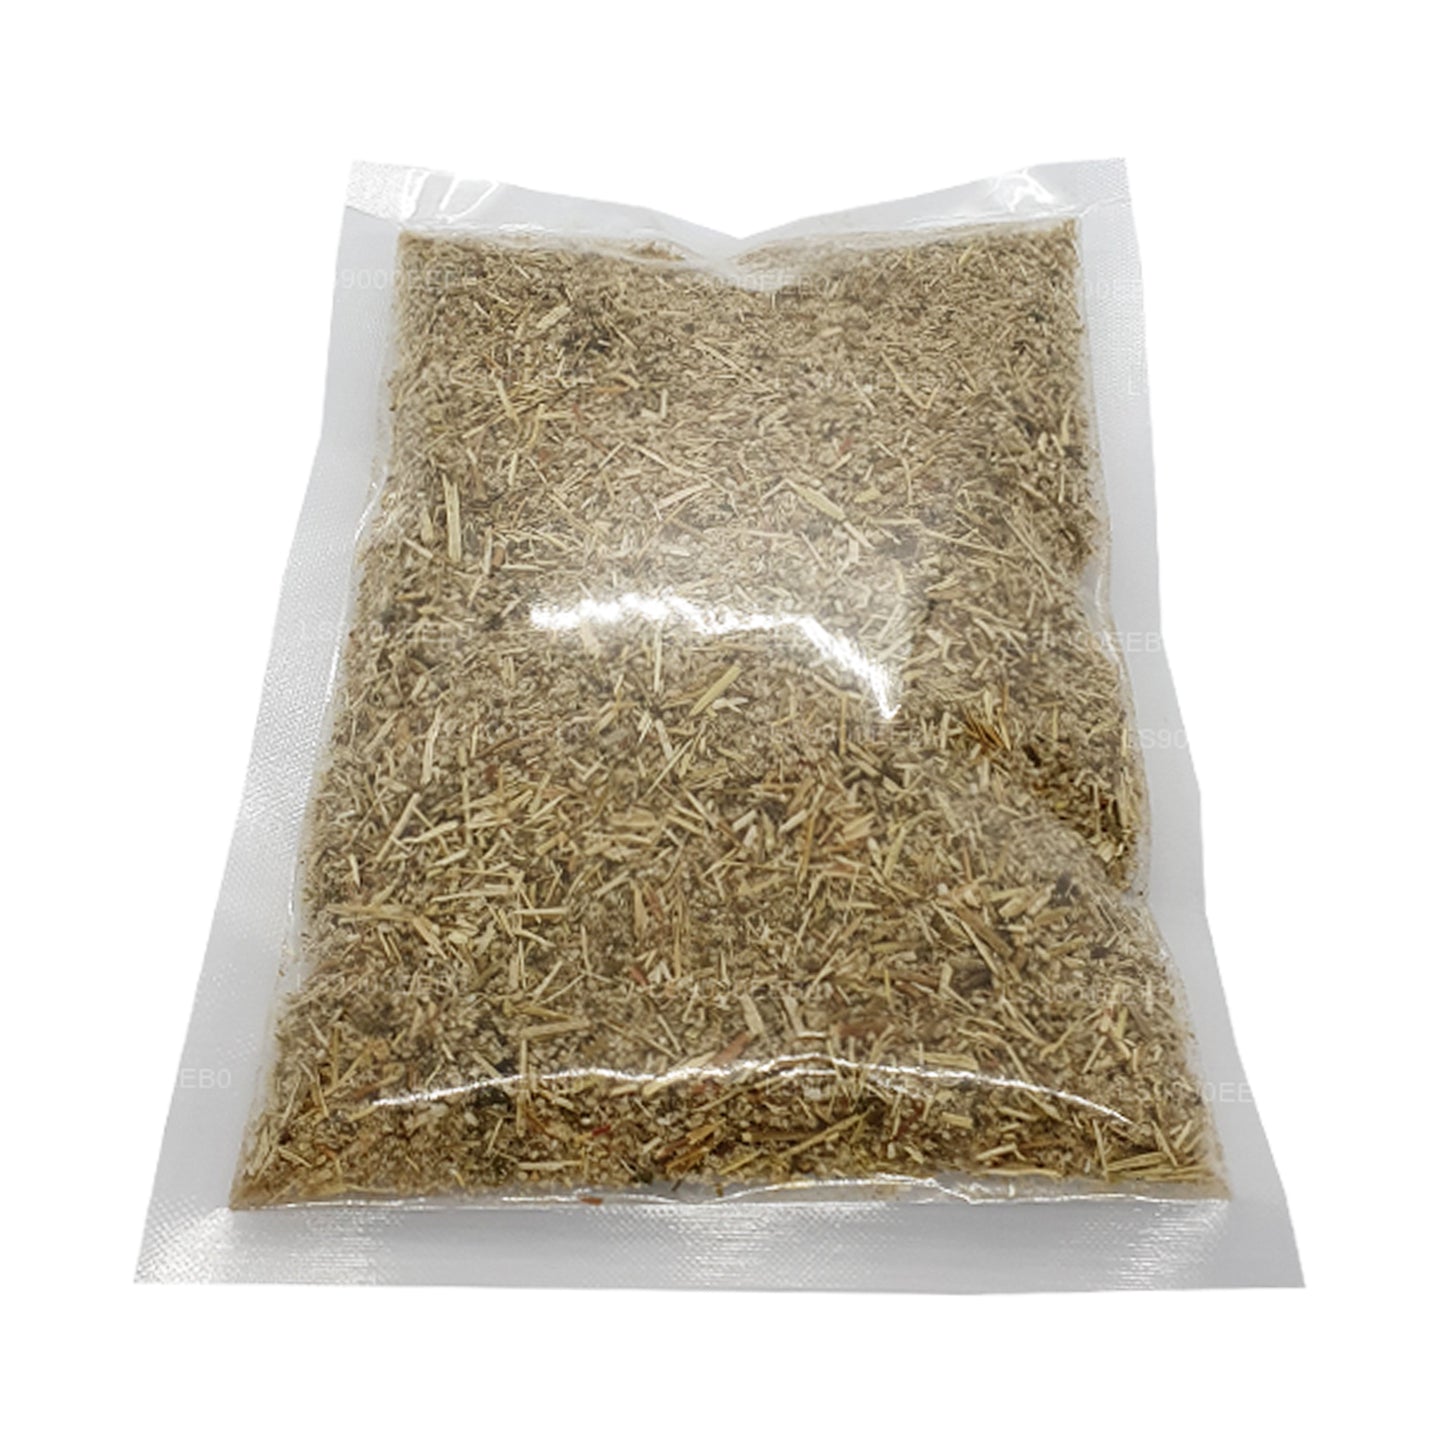 Paquete de polpala deshidratada Lakpura (Aerva Lanata) (100 g)